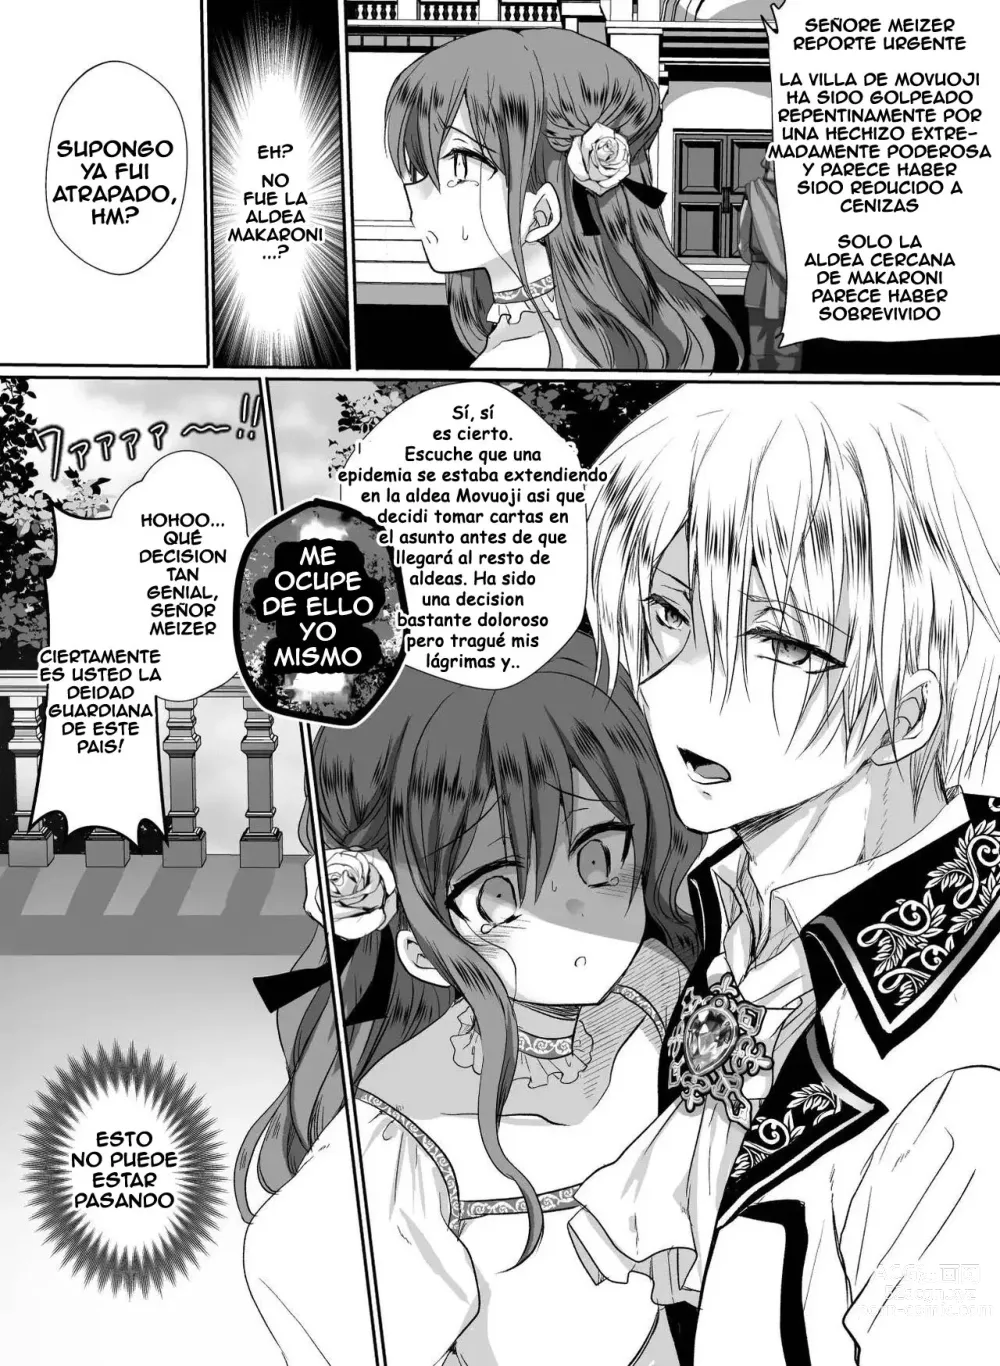 Page 56 of doujinshi Colegiala fangirl de NPCs reencarna como la hija de la villana ~La Tragedia~ Parte 1